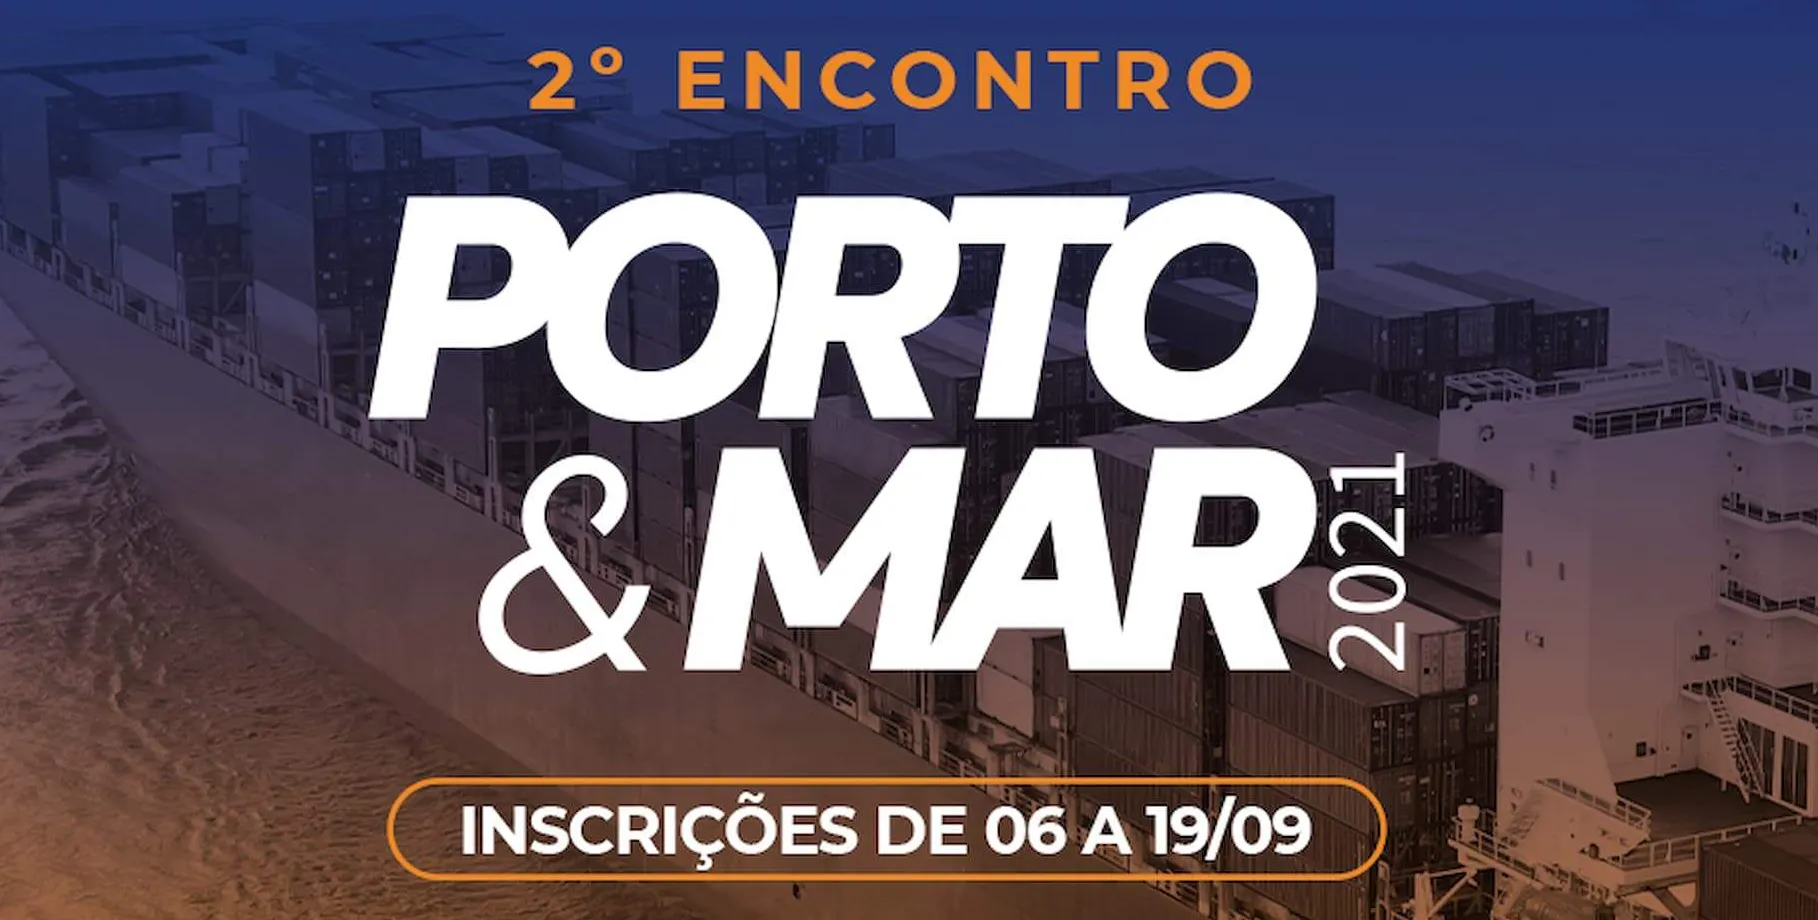  Inscrições para 2º encontro Porto & Mar começam nesta segunda-feira 